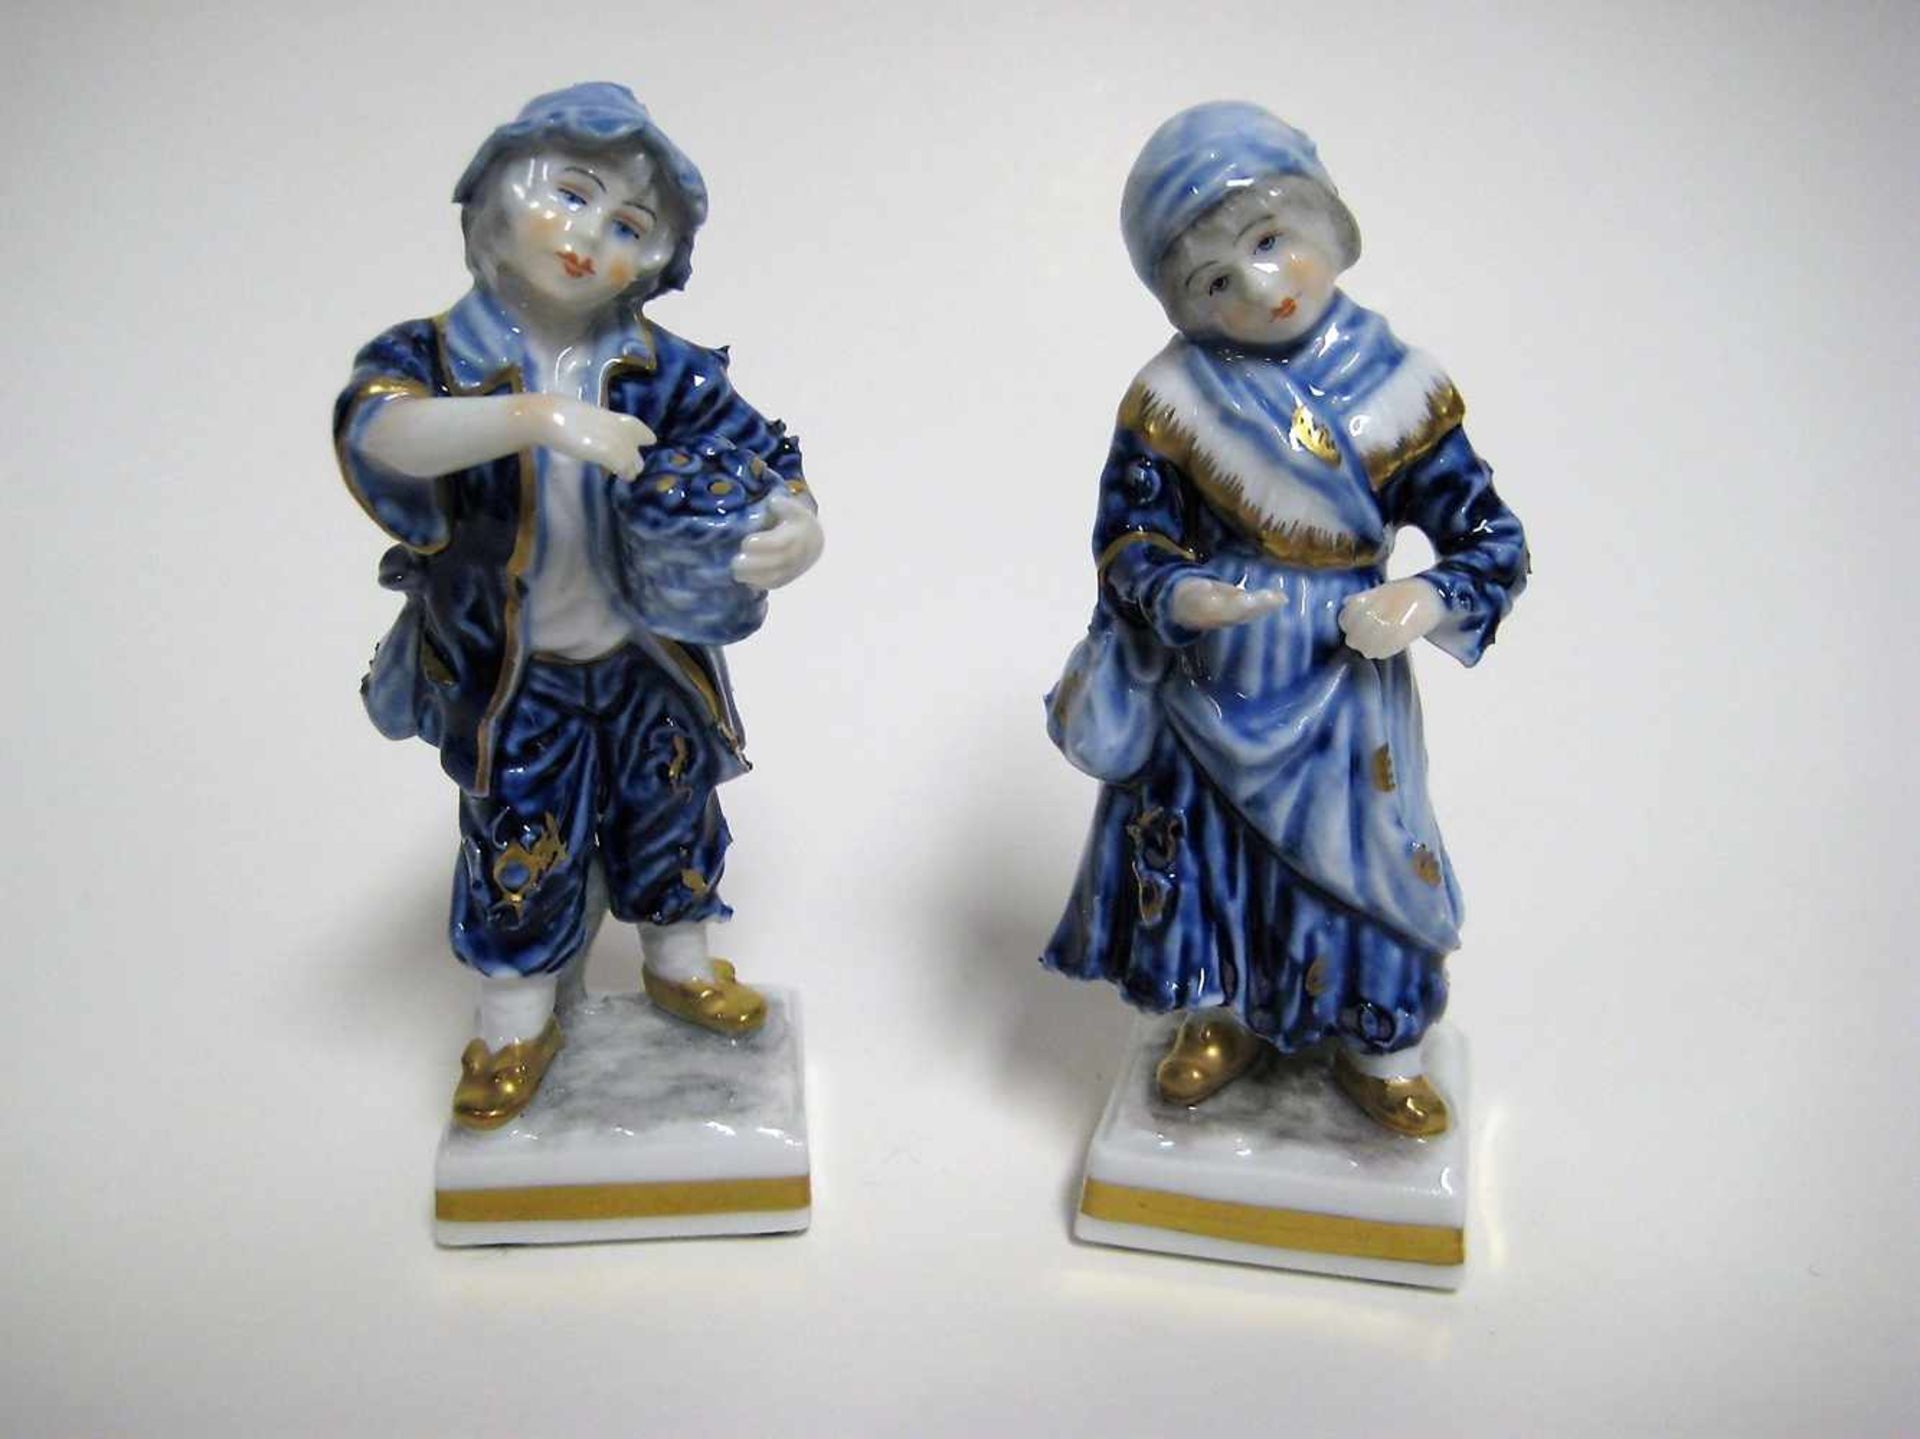 2 Porzellanfiguren, Bub und Mädchen, Volkstedt Rudolstadt, Porzellan Blau glasiert und Gold